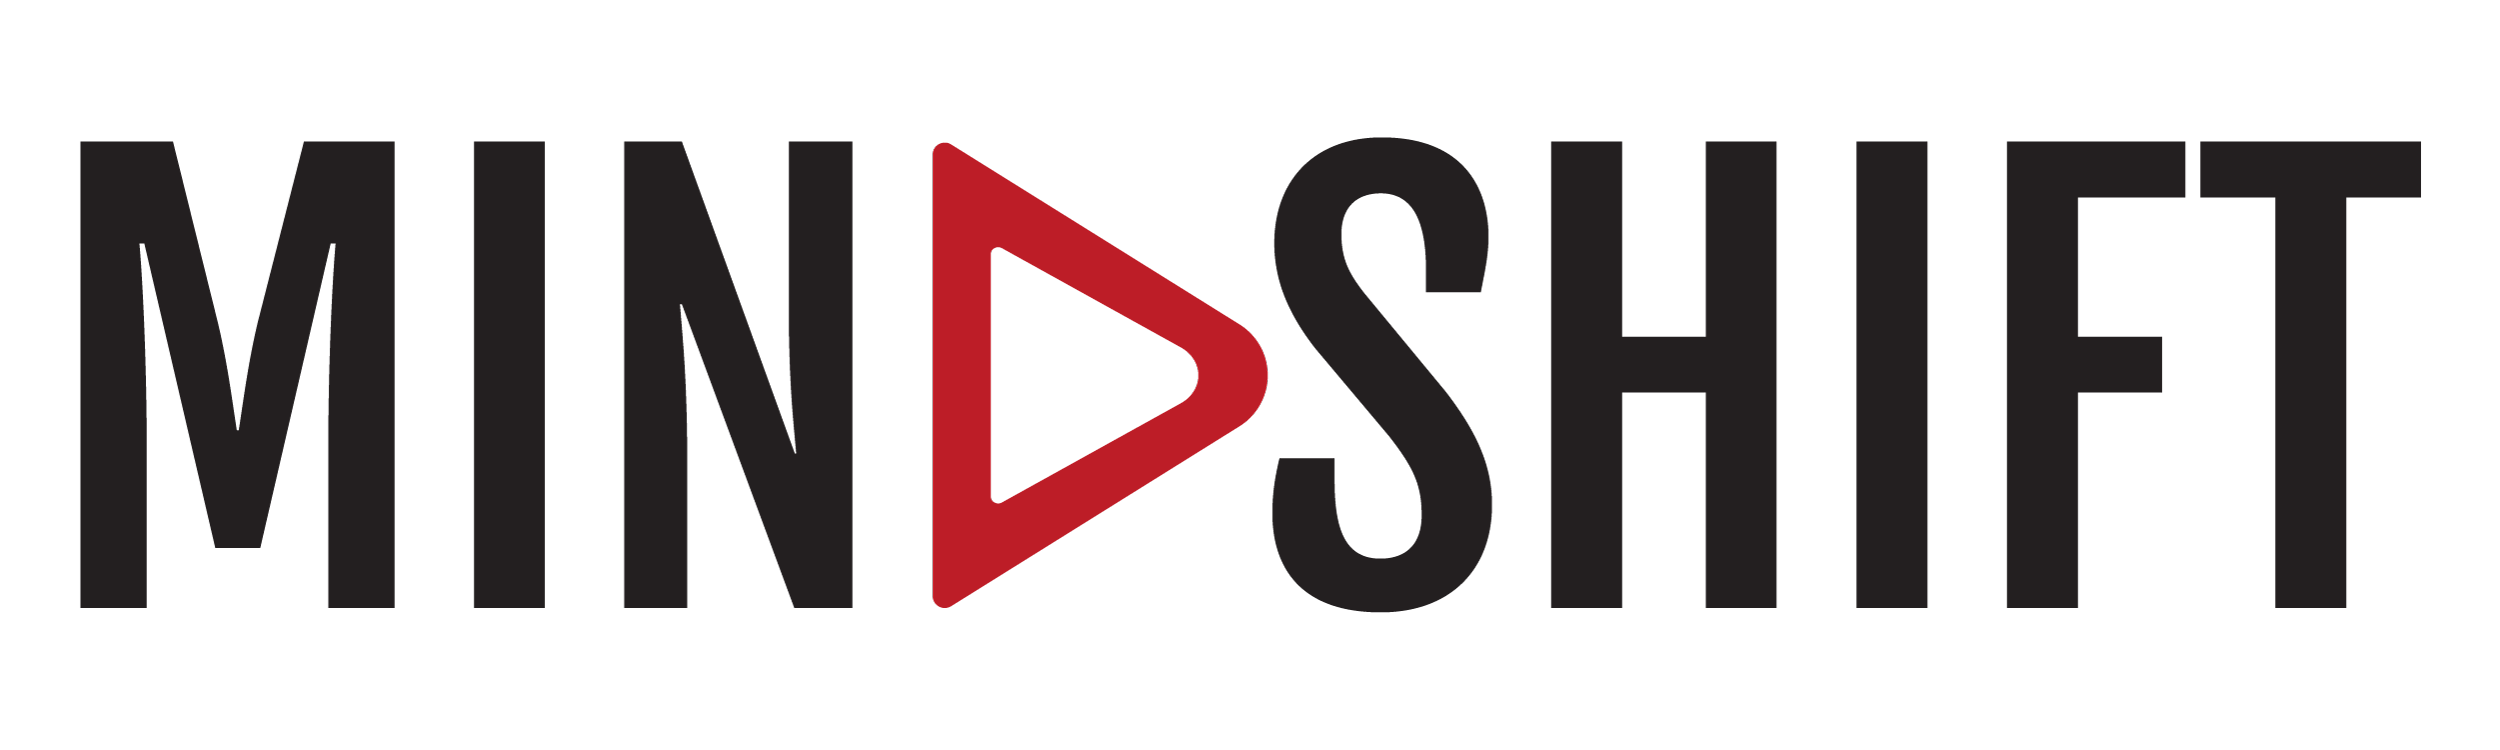 MindShift Logo